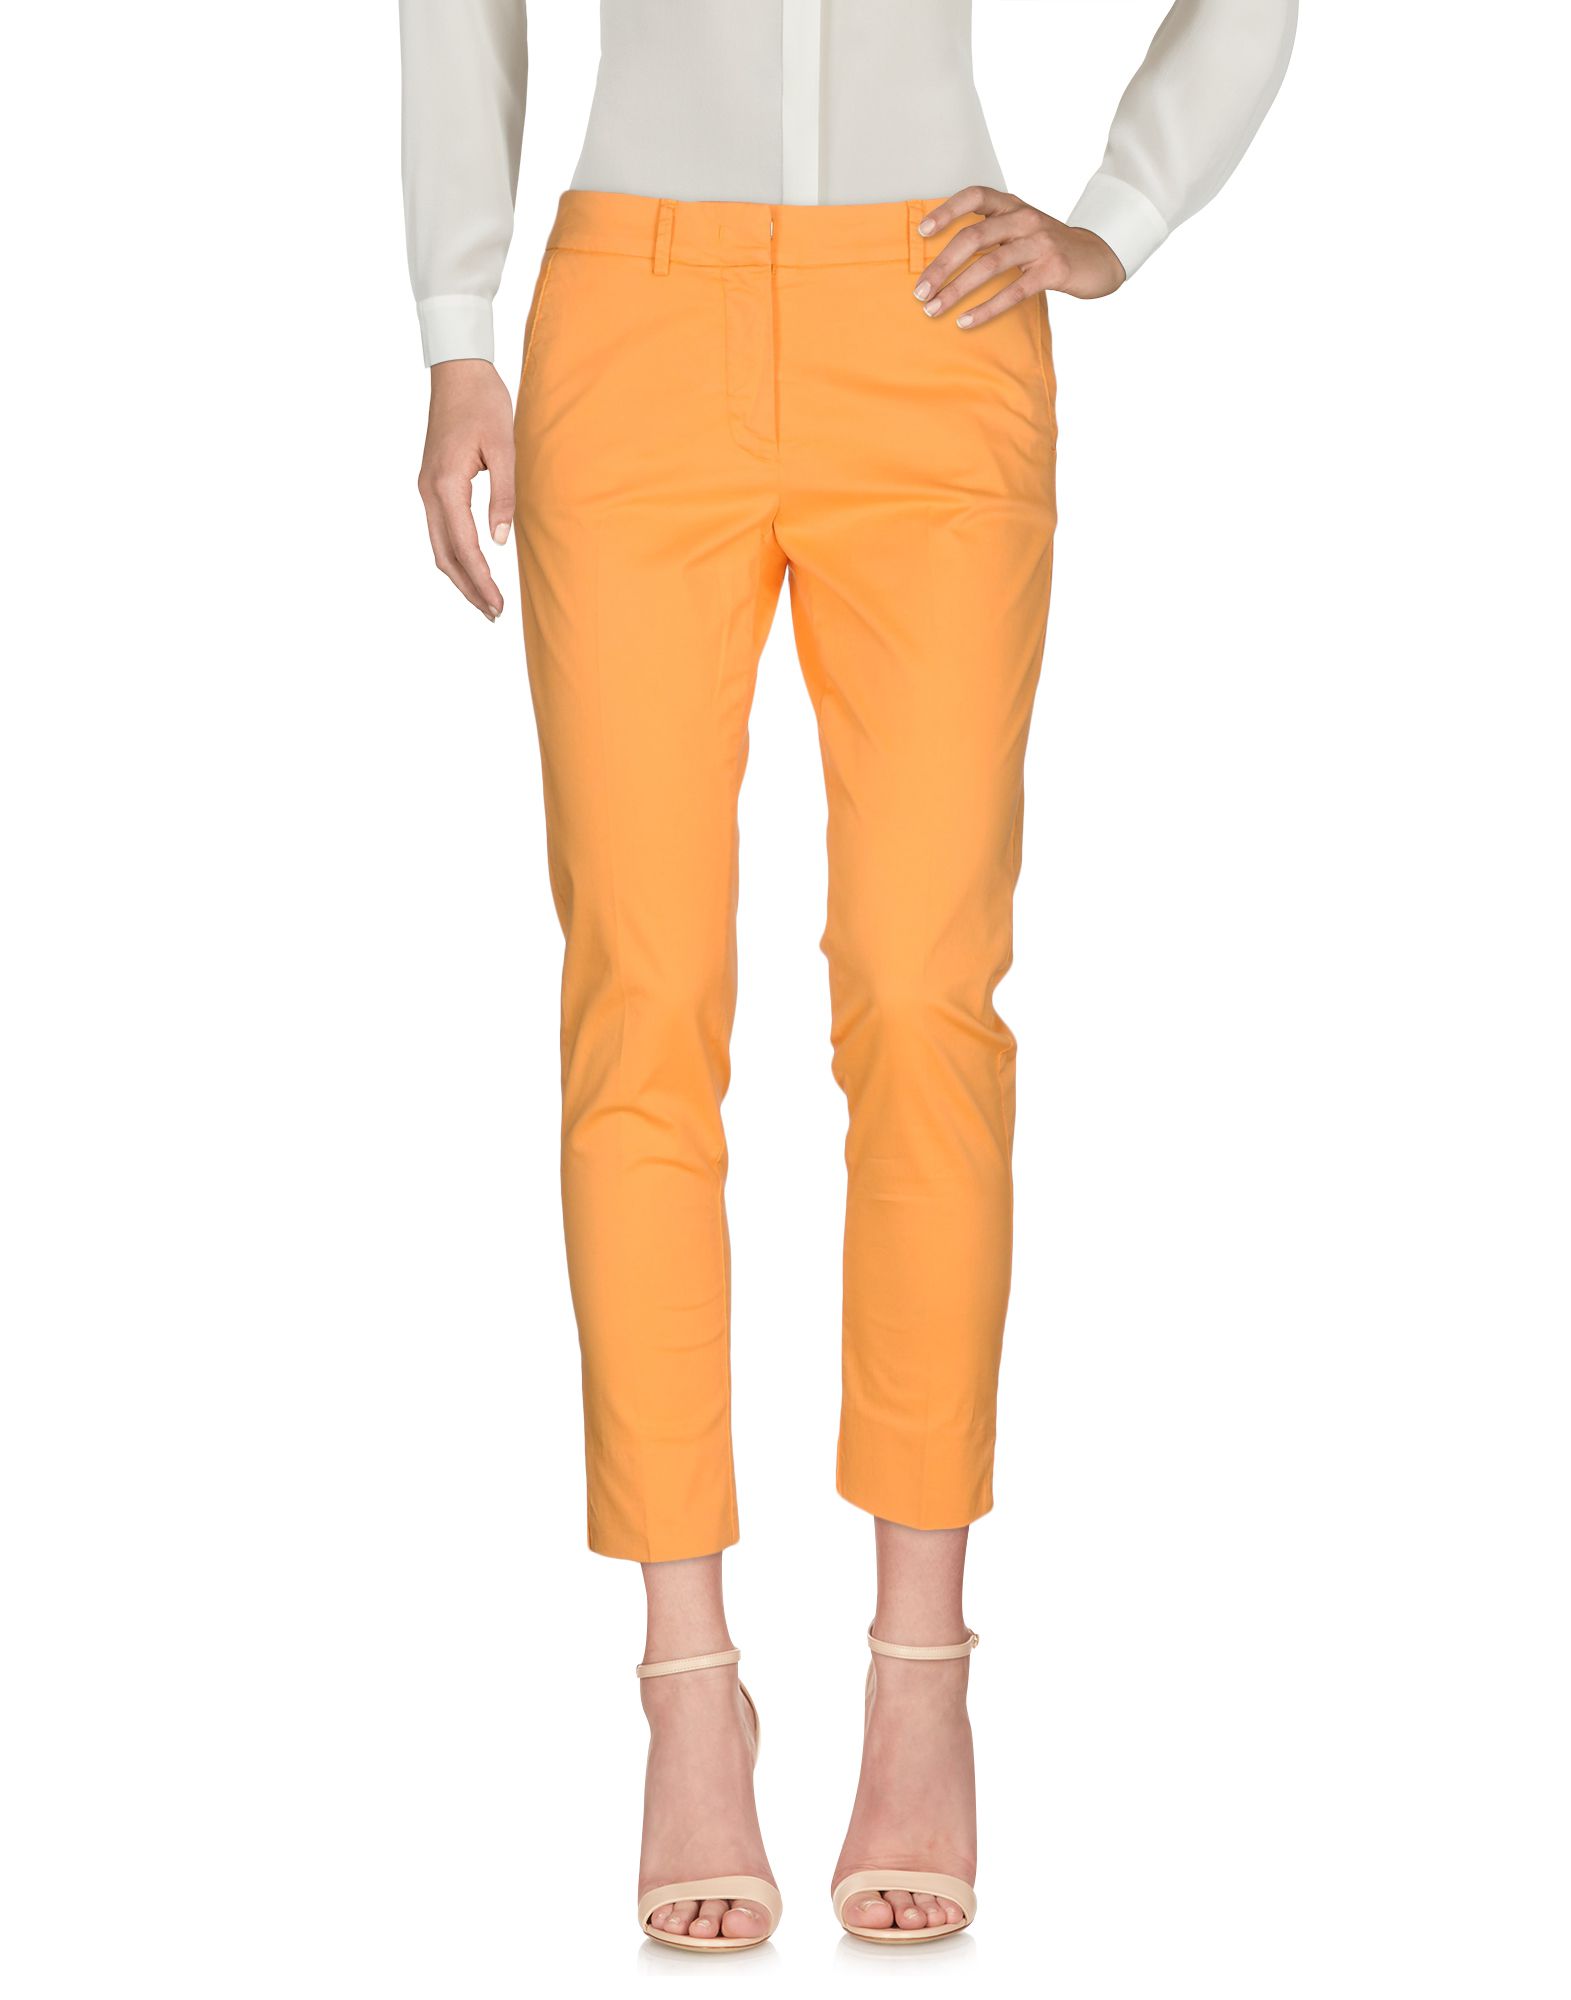 Rossopuro Pants In Orange